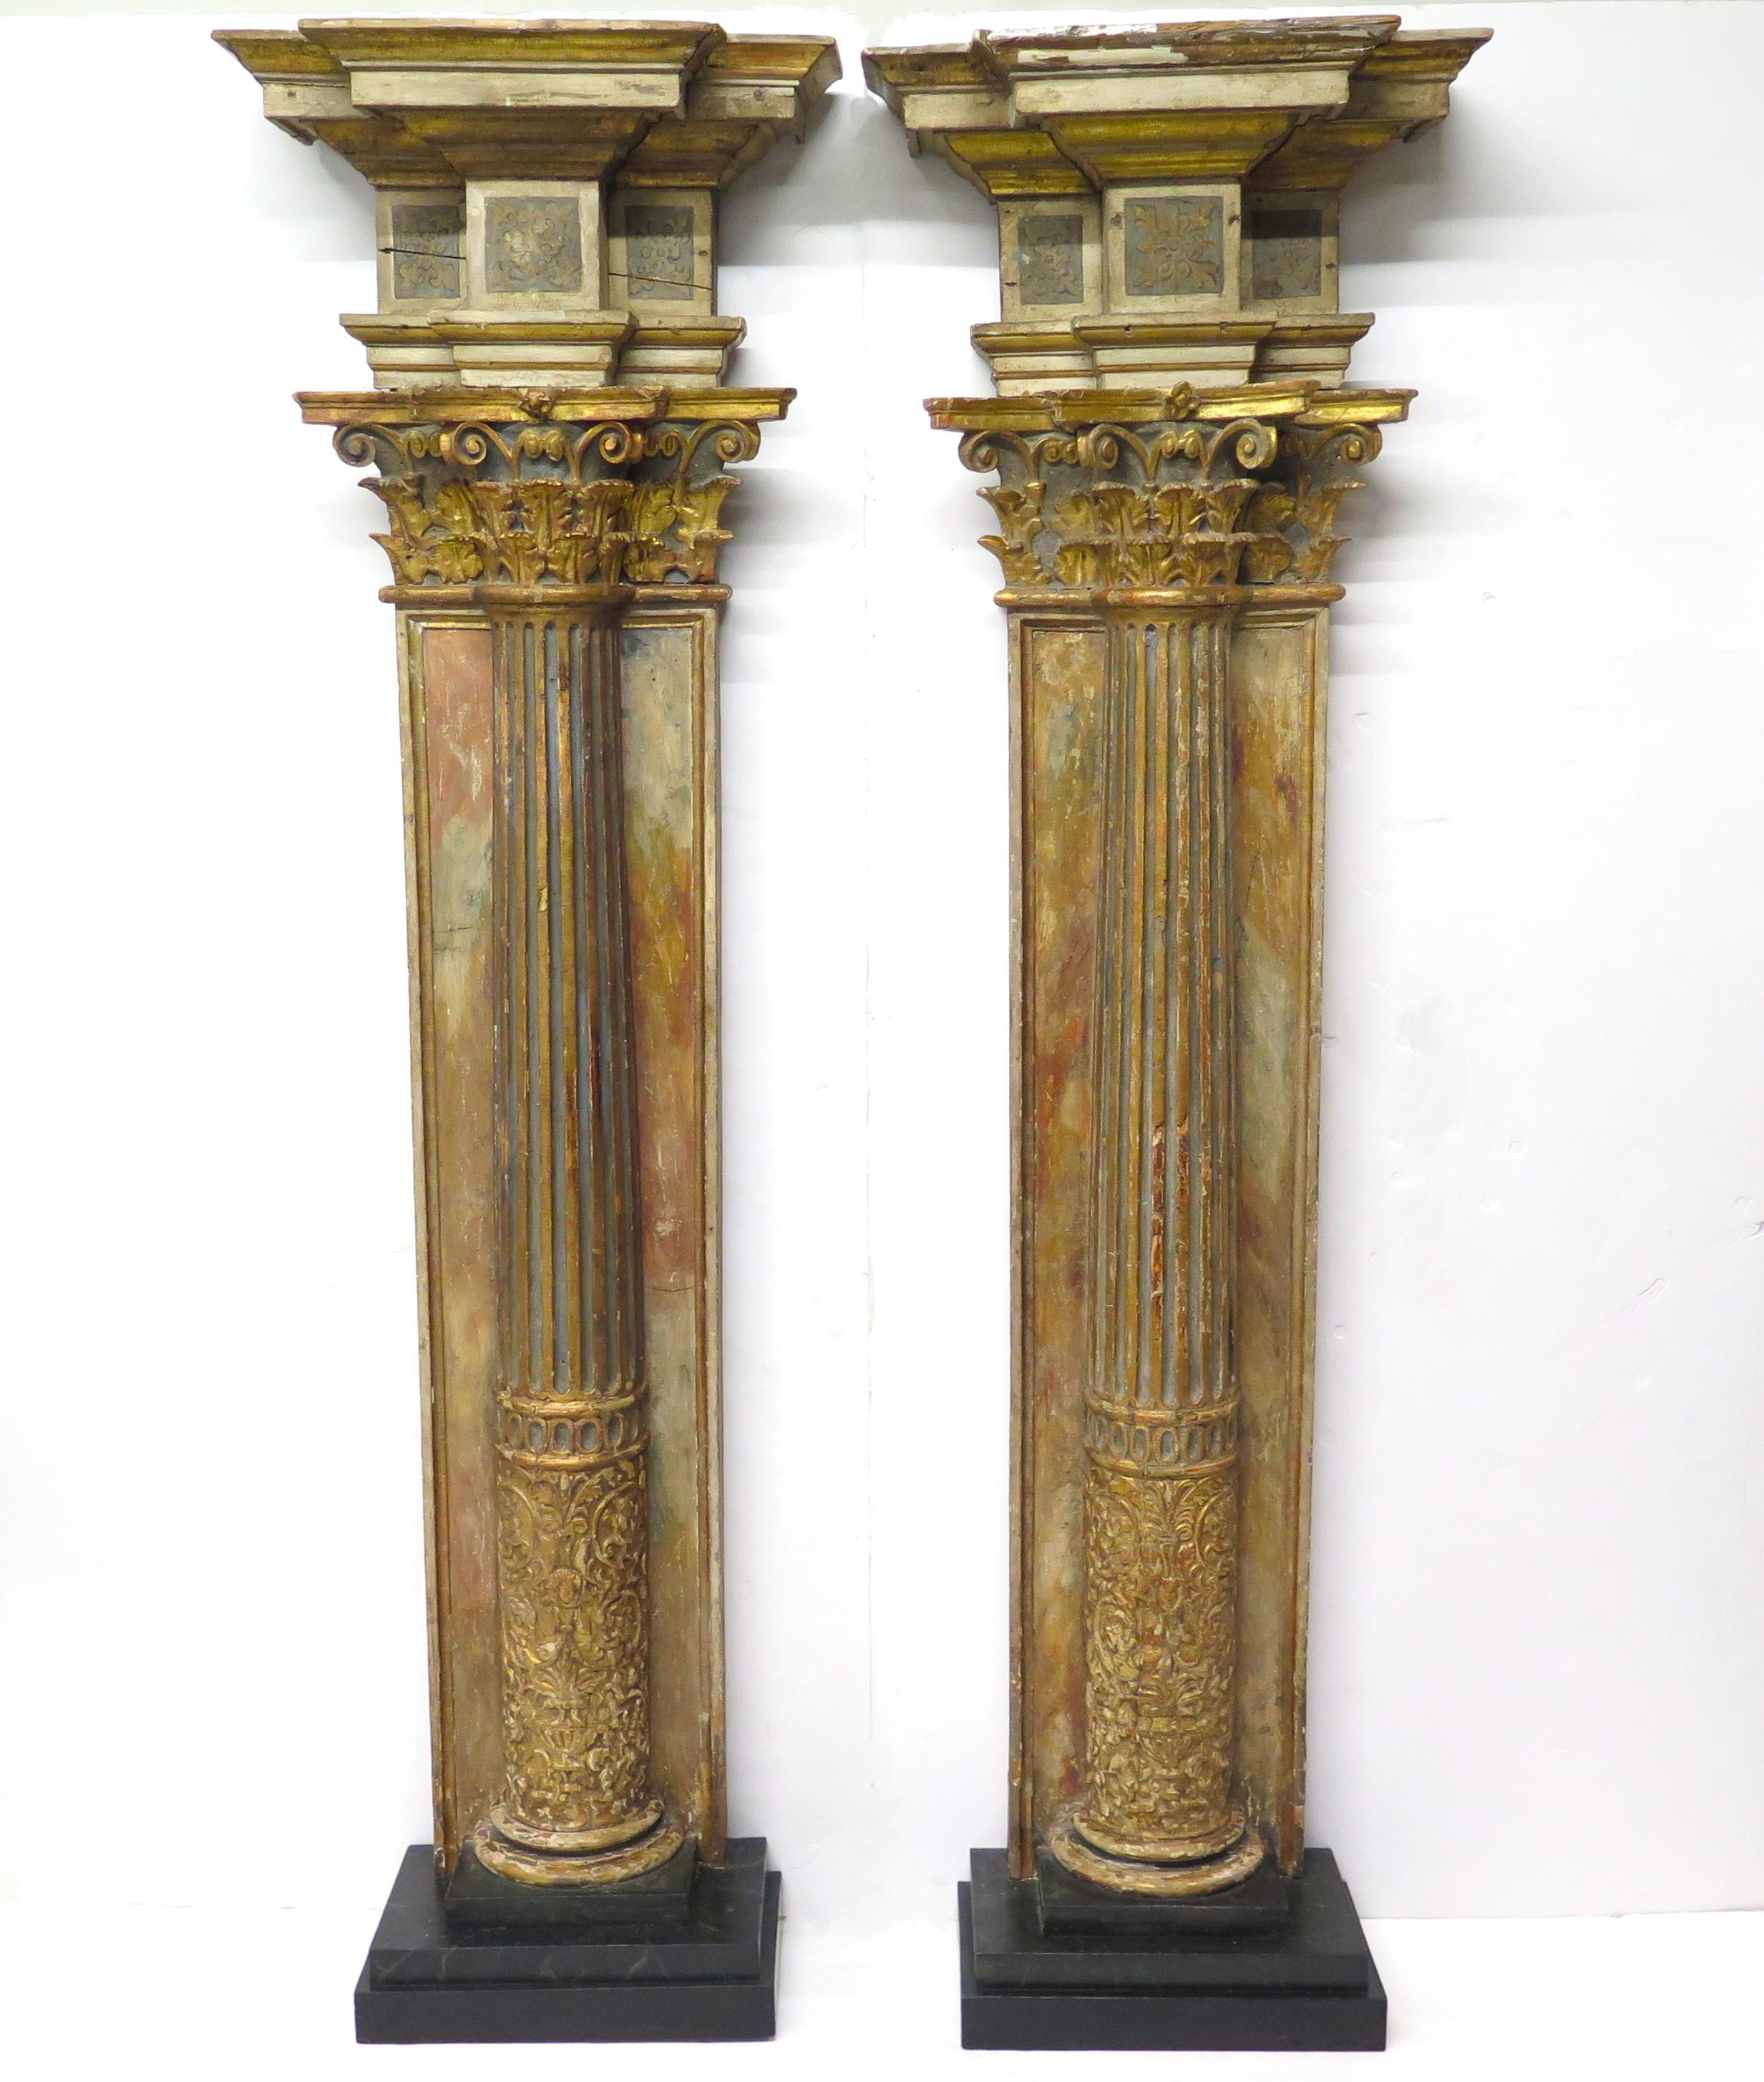 une paire de colonnes corinthiennes cannelées à trois quarts en bois doré néoclassique et décorées en polychromie / éléments architecturaux, Italie, début du 19ème siècle

93,25